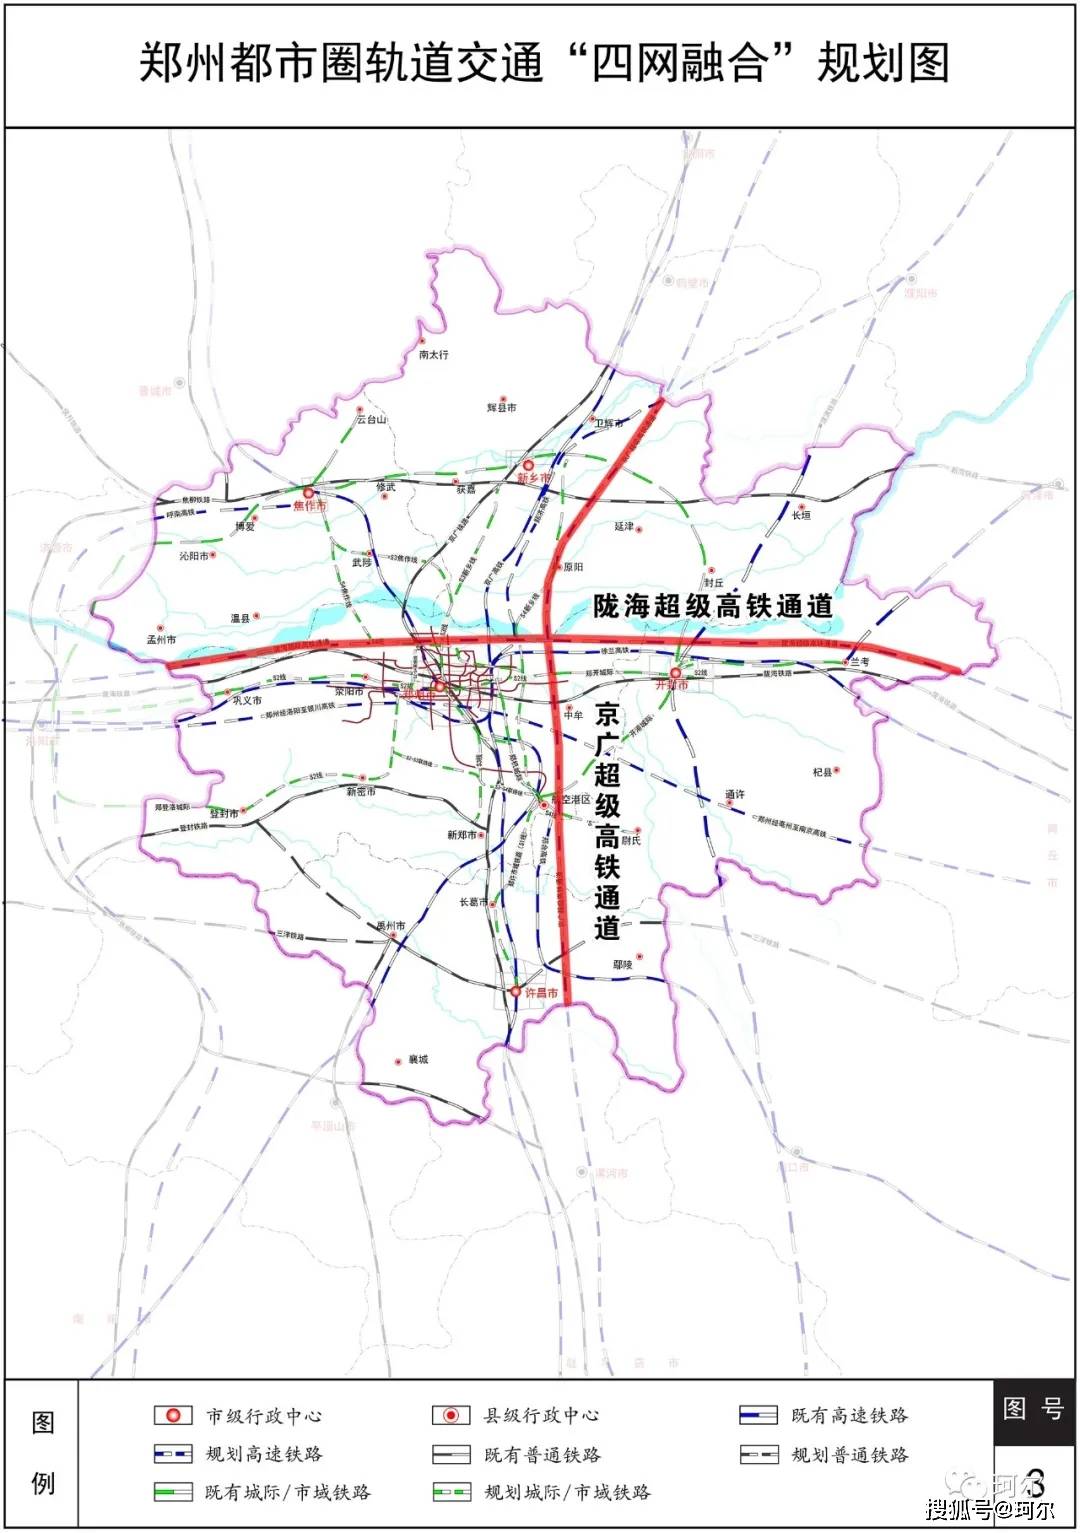 郑州都市圈扩容两条超速铁路通道规划亮相交汇处可能成为第五高铁站